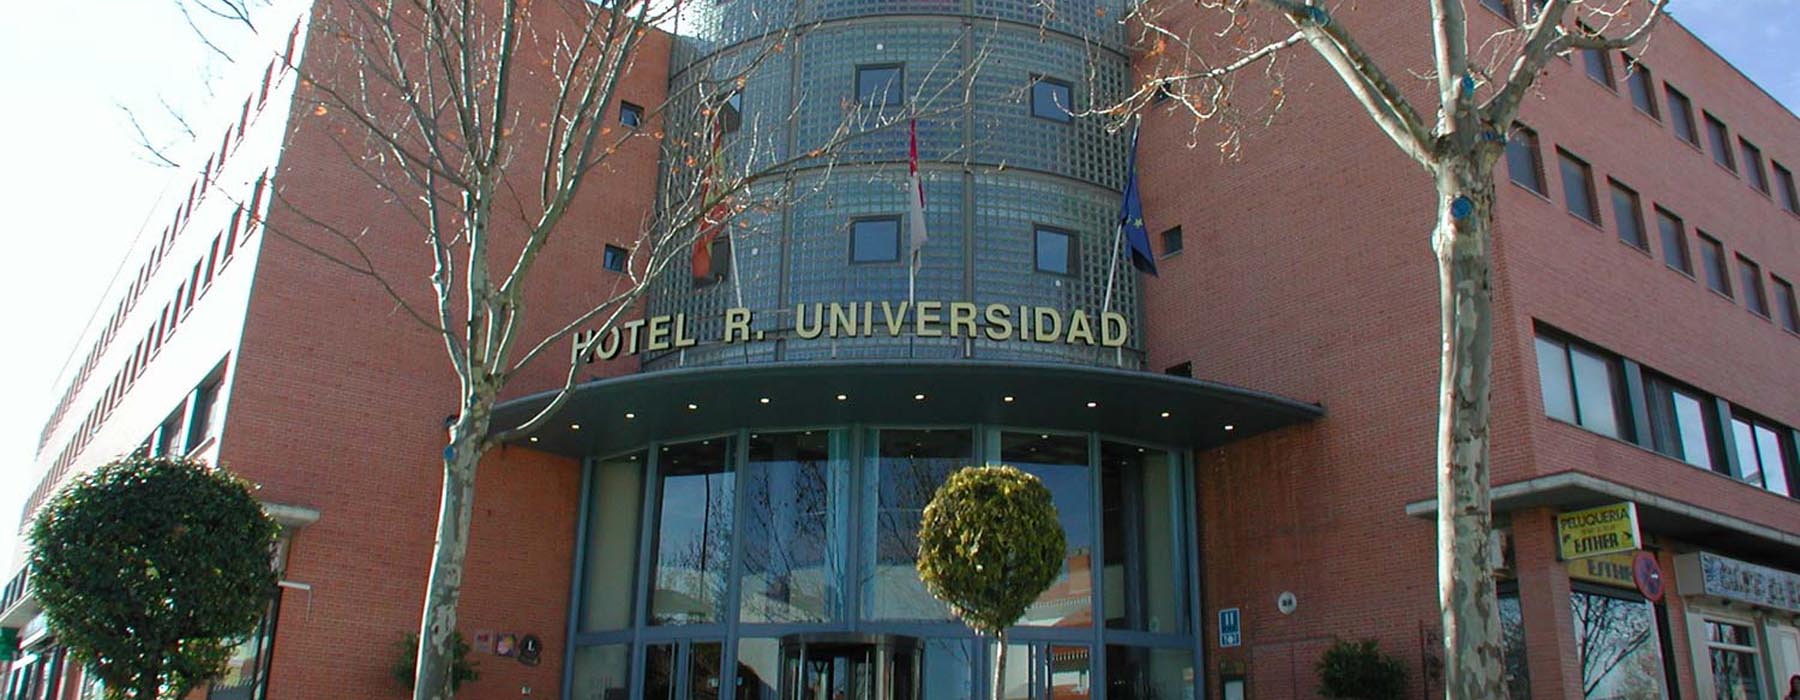 Hotel Universidad  header